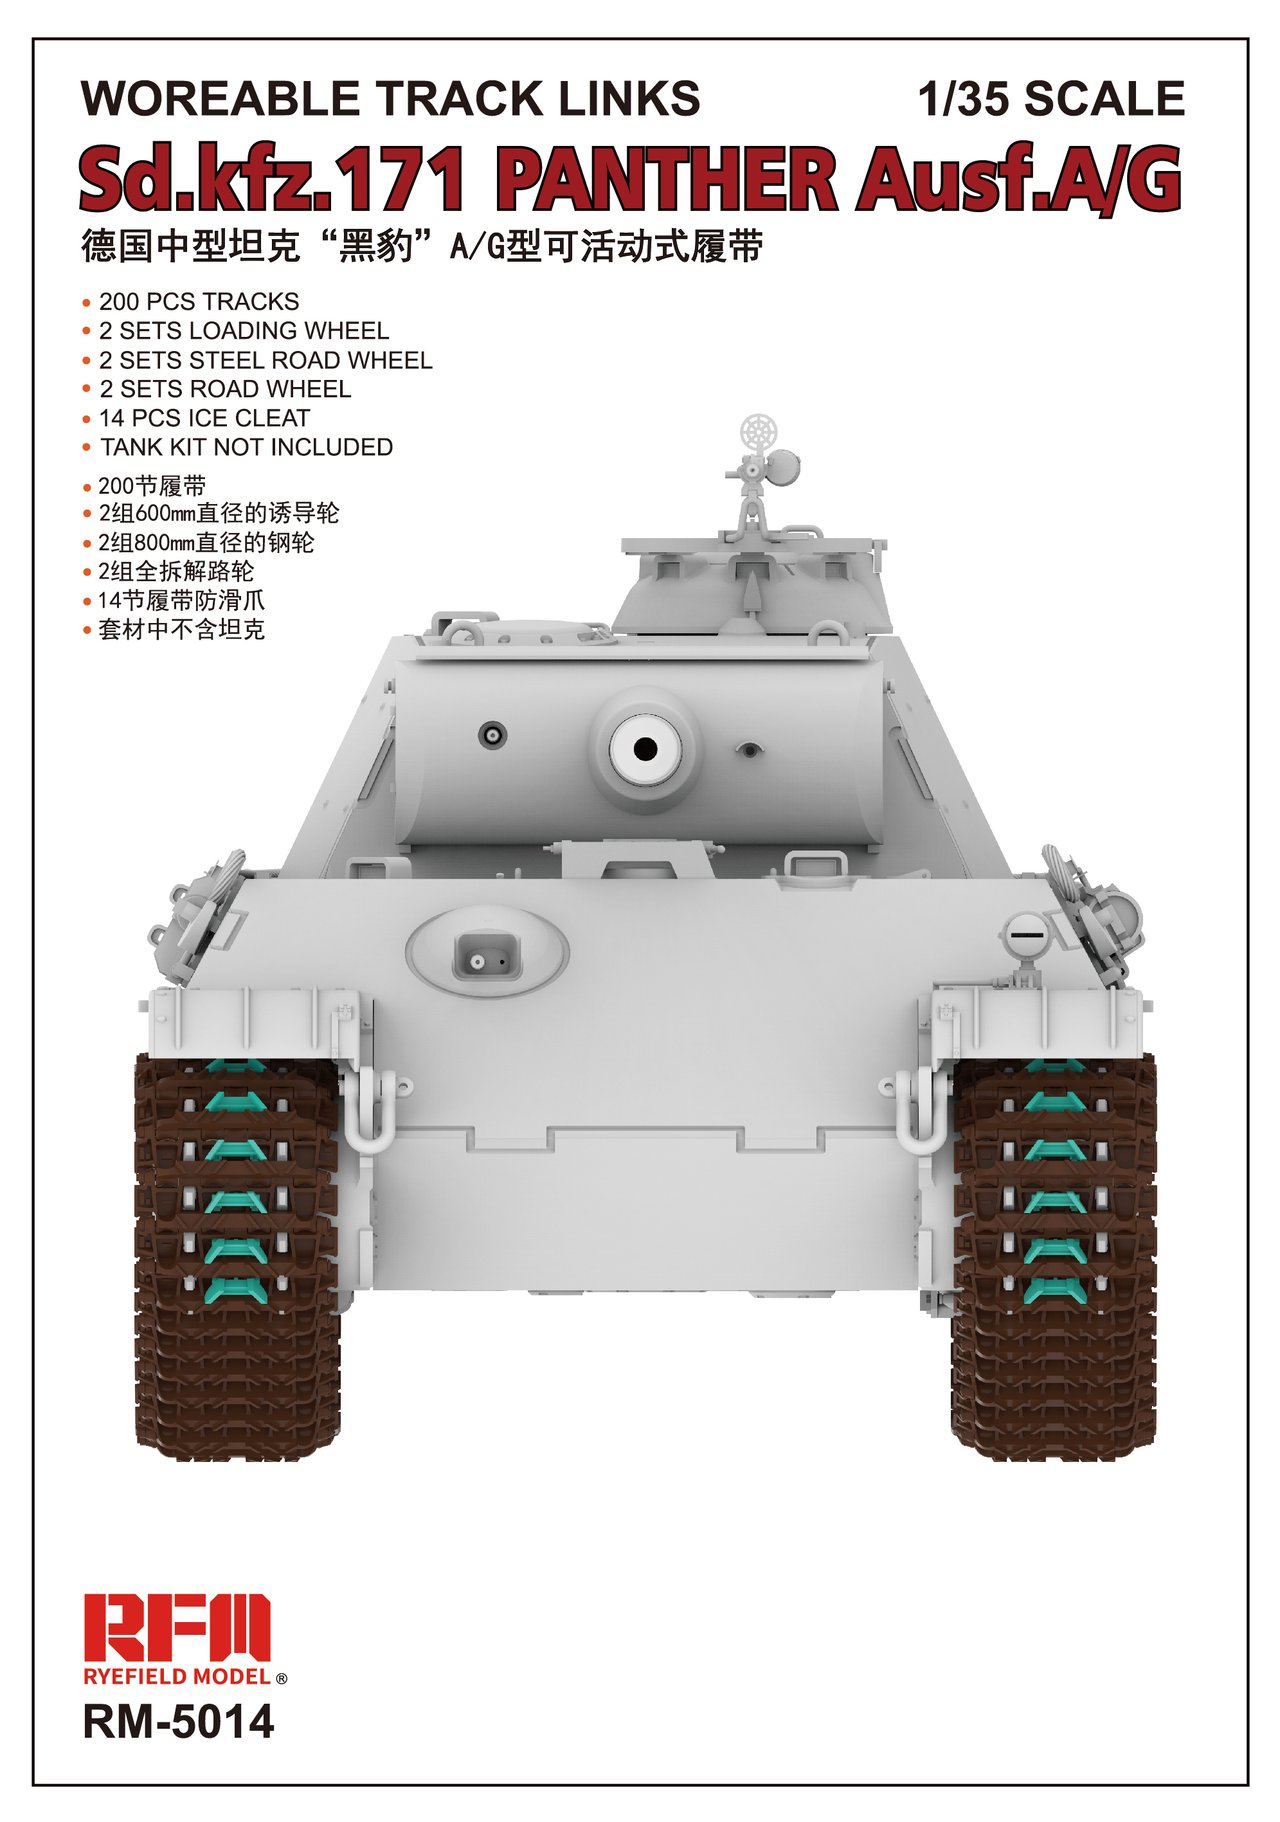 1/35 二战德国豹式中型坦克A/G型活动履带 - 点击图像关闭